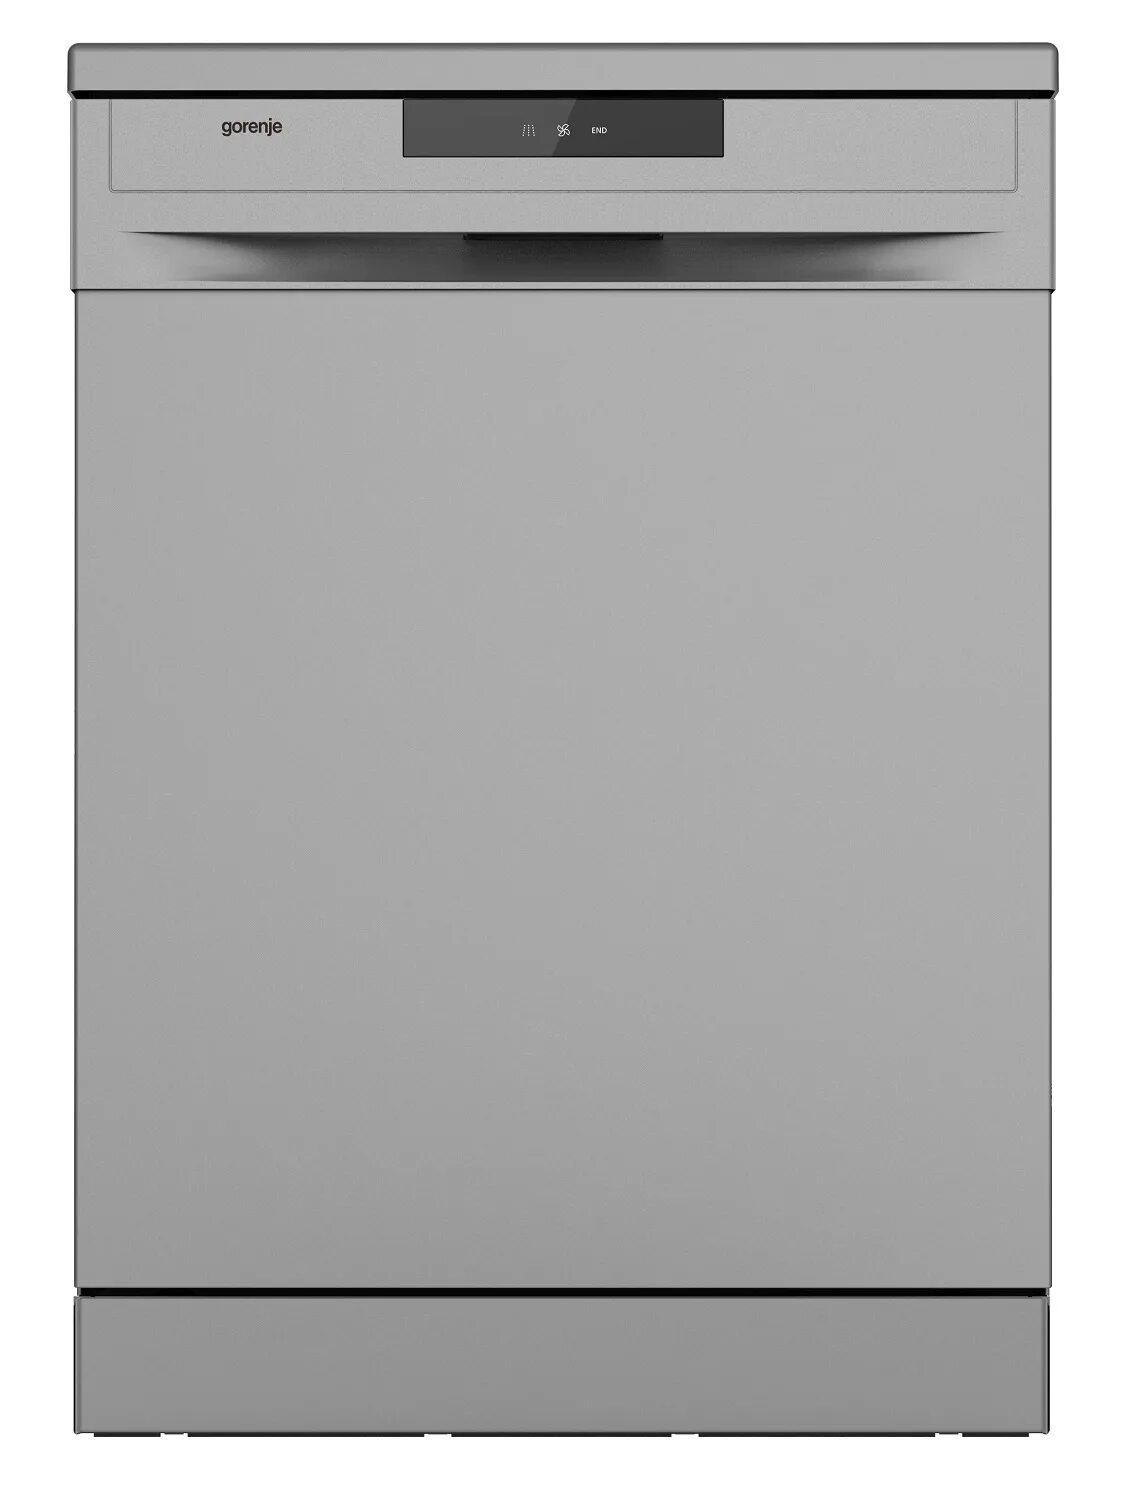 Посудомоечная машина Gorenje gs520e15s. Посудомоечная машина Gorenje gs52040s. Посудомоечная машина Gorenje gs52010s. Посудомойка Gorenje gs531e10w. Посудомоечная машина горение купить